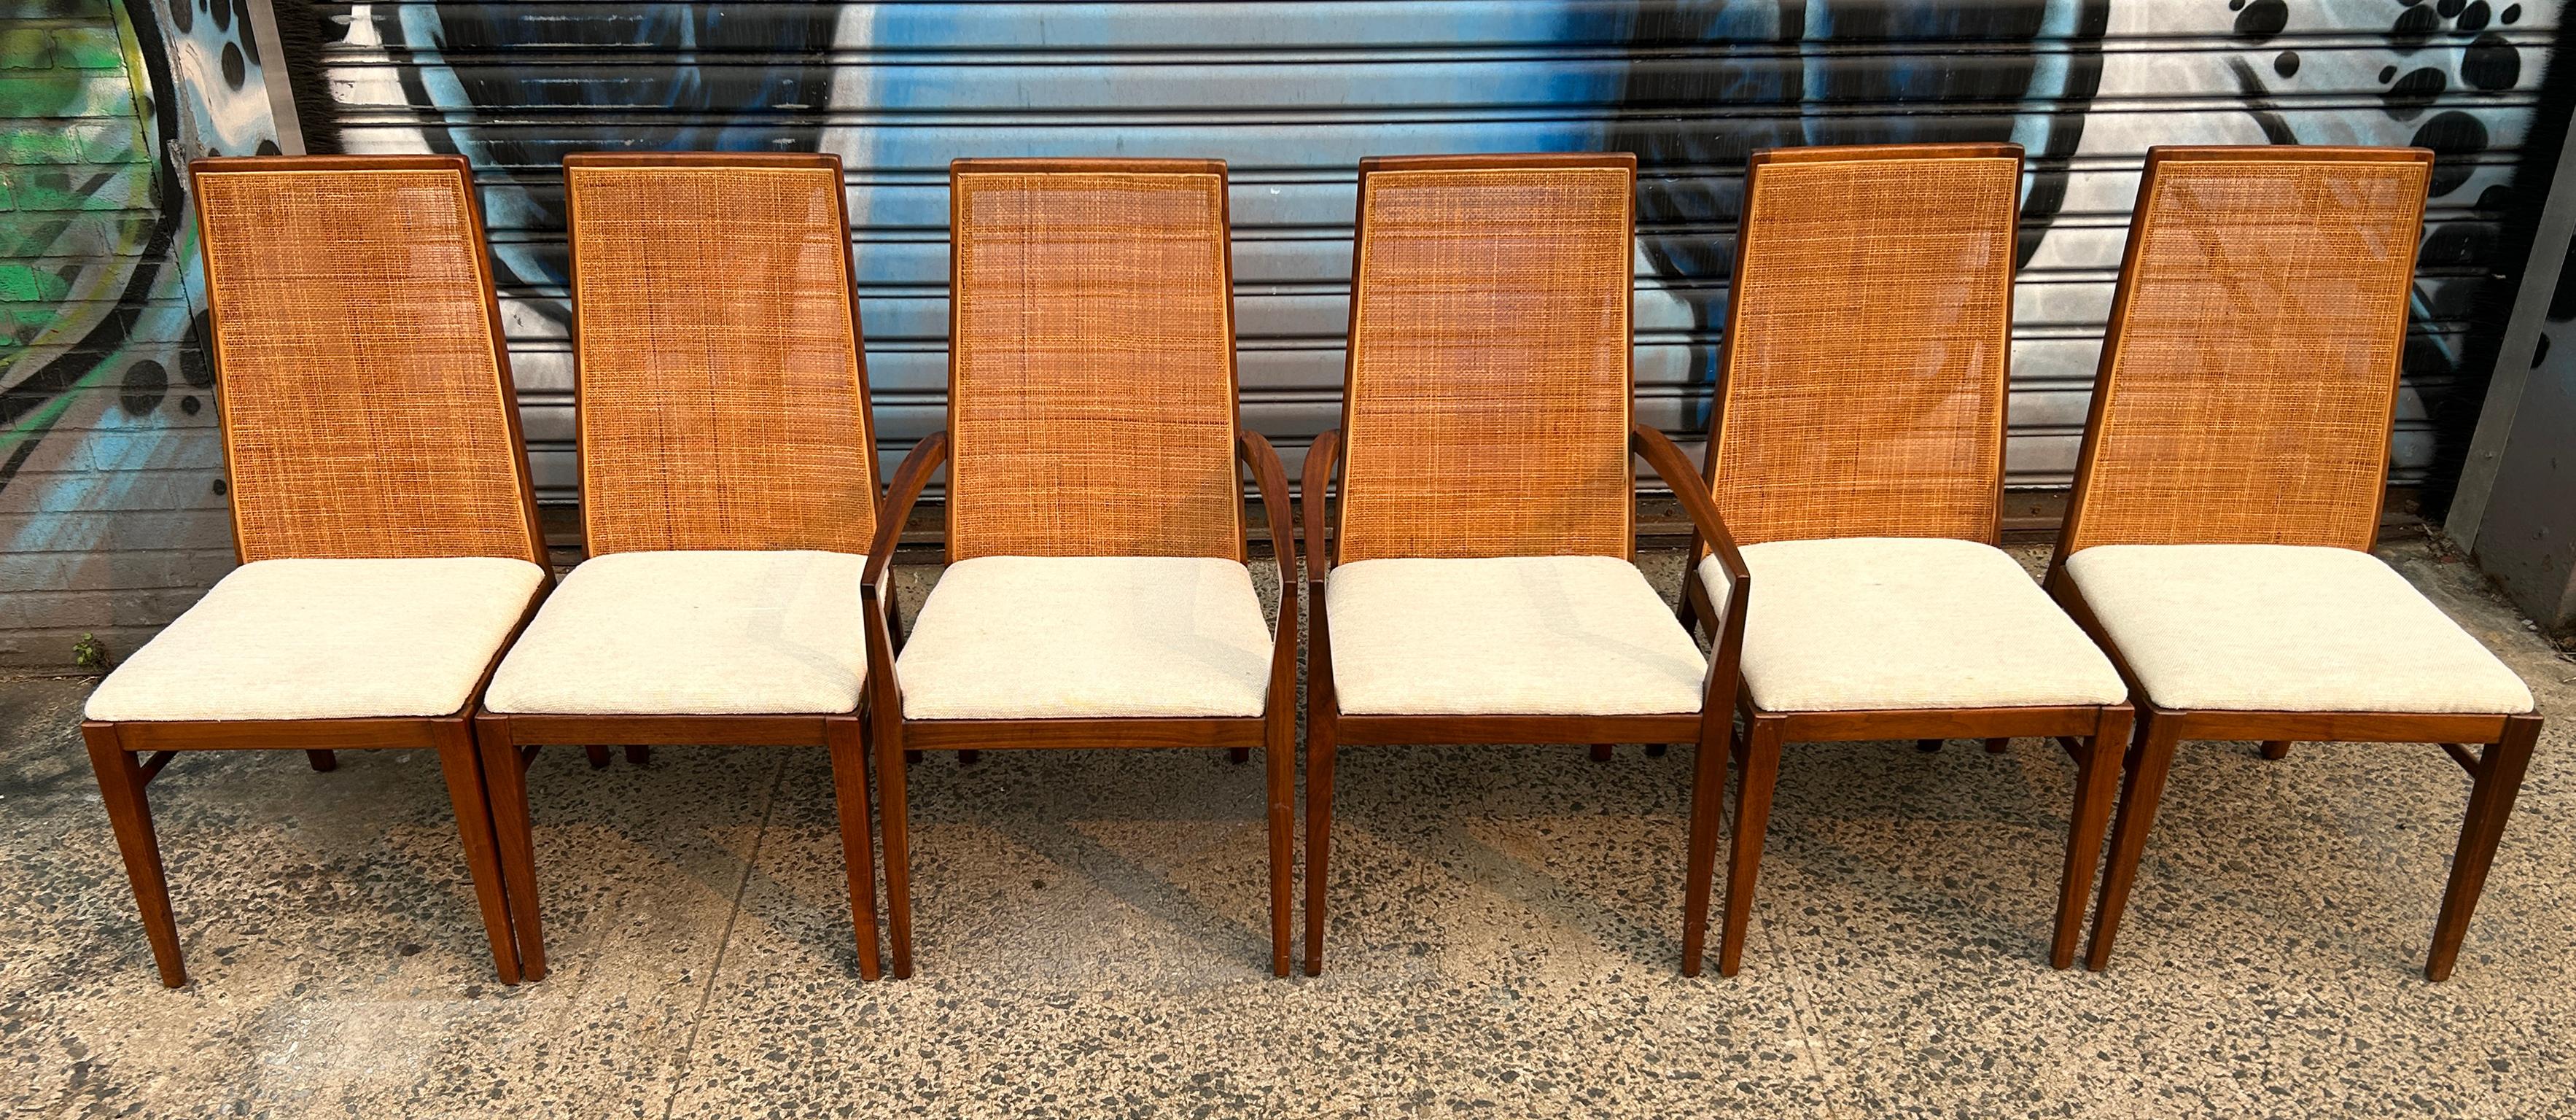 Magnifique ensemble de 6 chaises de salle à manger en rotin à dossier haut et effilé de style moderne du milieu du siècle. (4) des chaises n'ont pas d'accoudoirs et (2) chaises ont des accoudoirs - toutes ont la même tapisserie en laine blanche